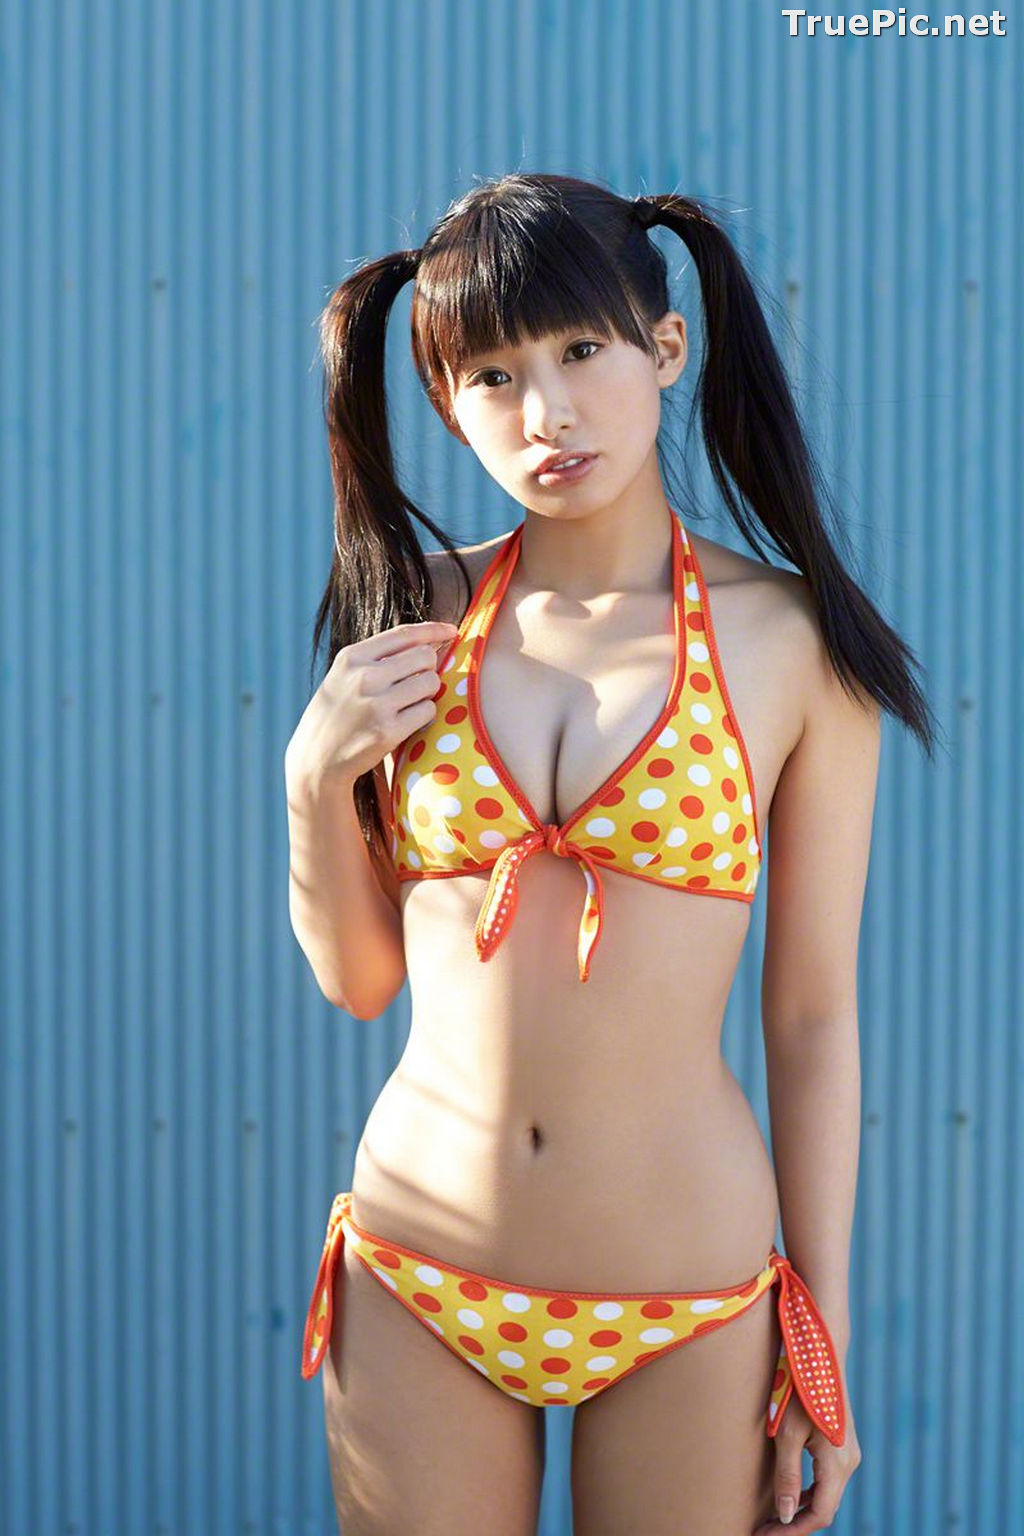 Image Wanibooks No.133 - Japanese Model and Singer - Hikari Shiina - TruePic.net - Picture-141